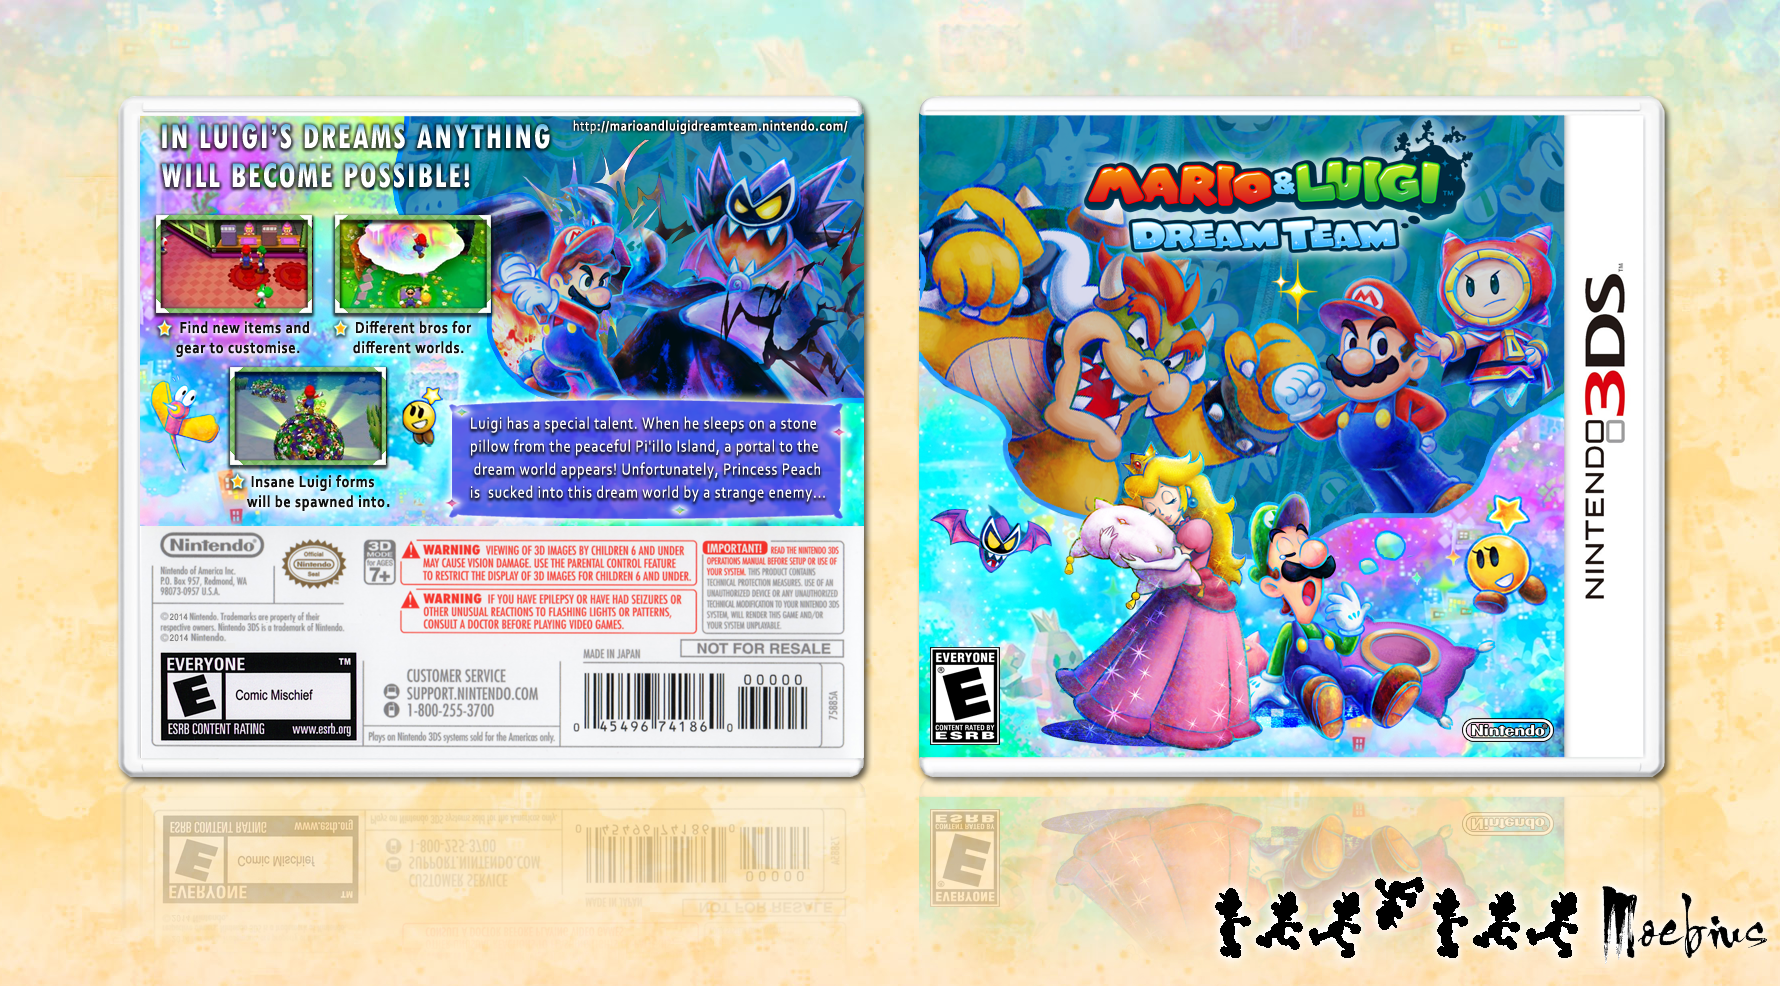 Mario & Luigi: Dream Team box cover